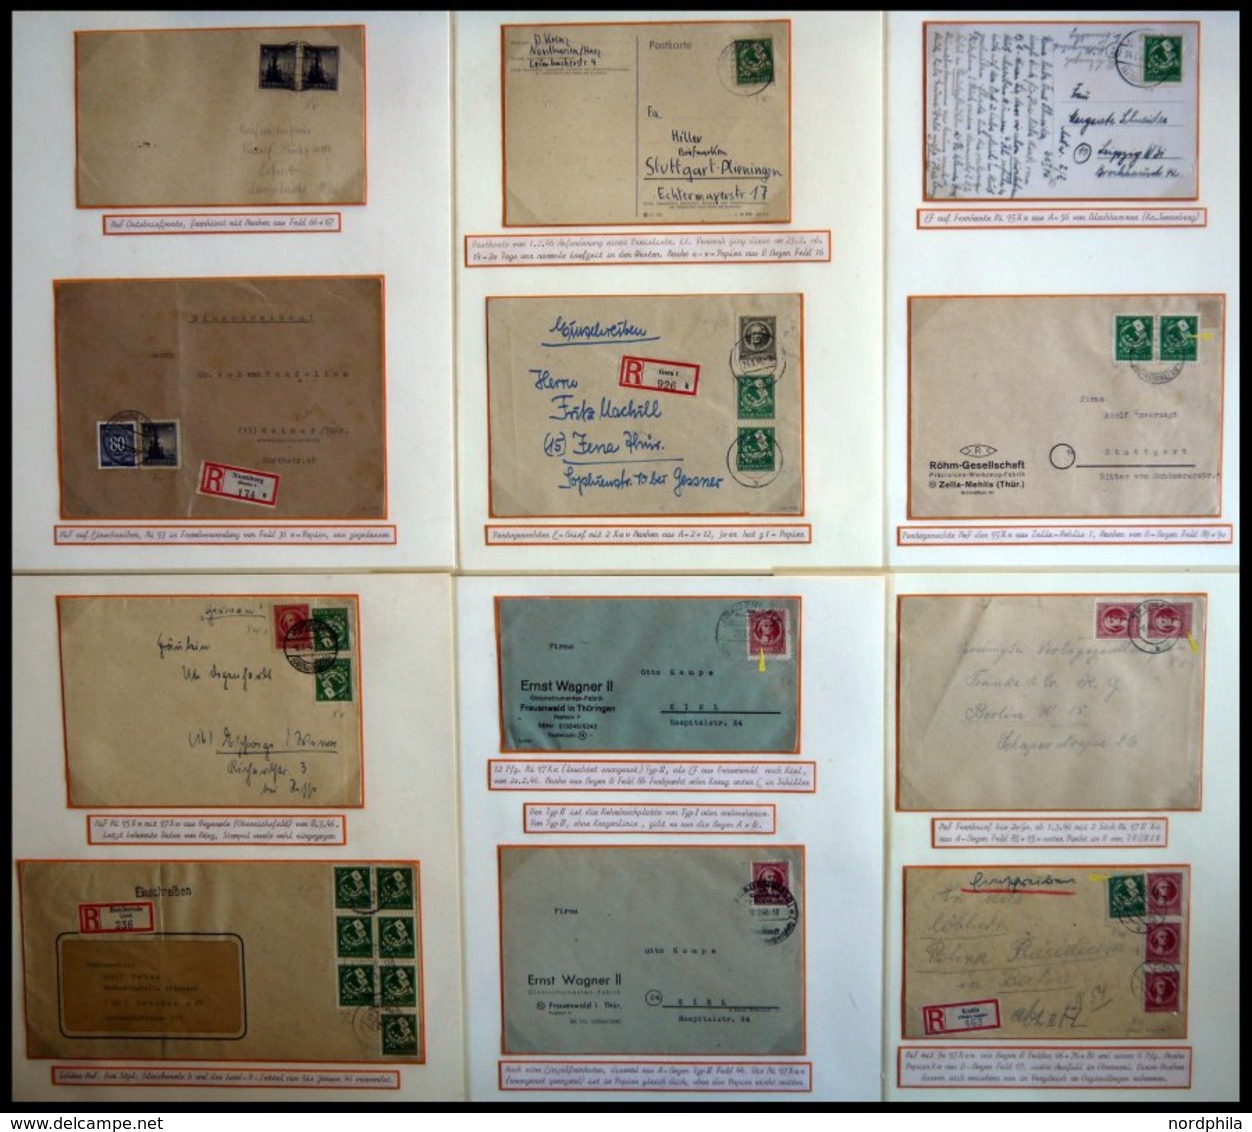 THÜRINGEN 92-99 BRIEF, saubere Briefsammlung von 116 Belegen der Freimarkenausgabe, alle mit viel Sachverstand nach Papi